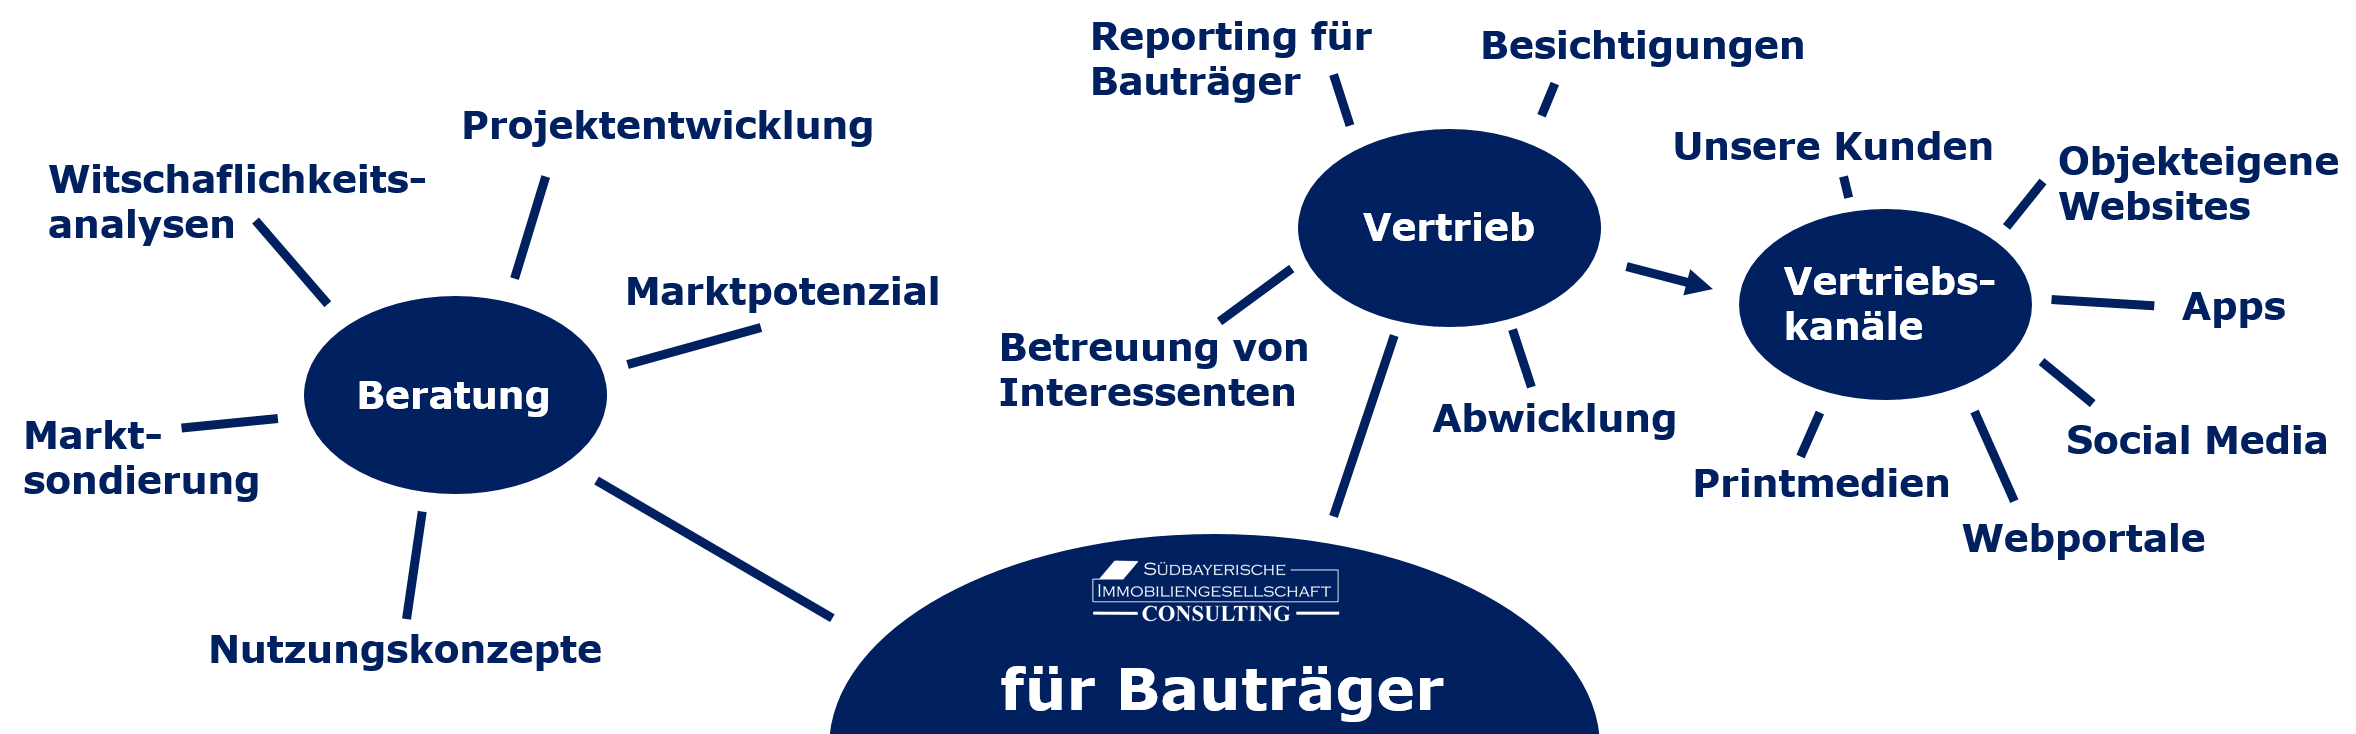 Bautraeger-Leistungen-Makler-Beratung.png